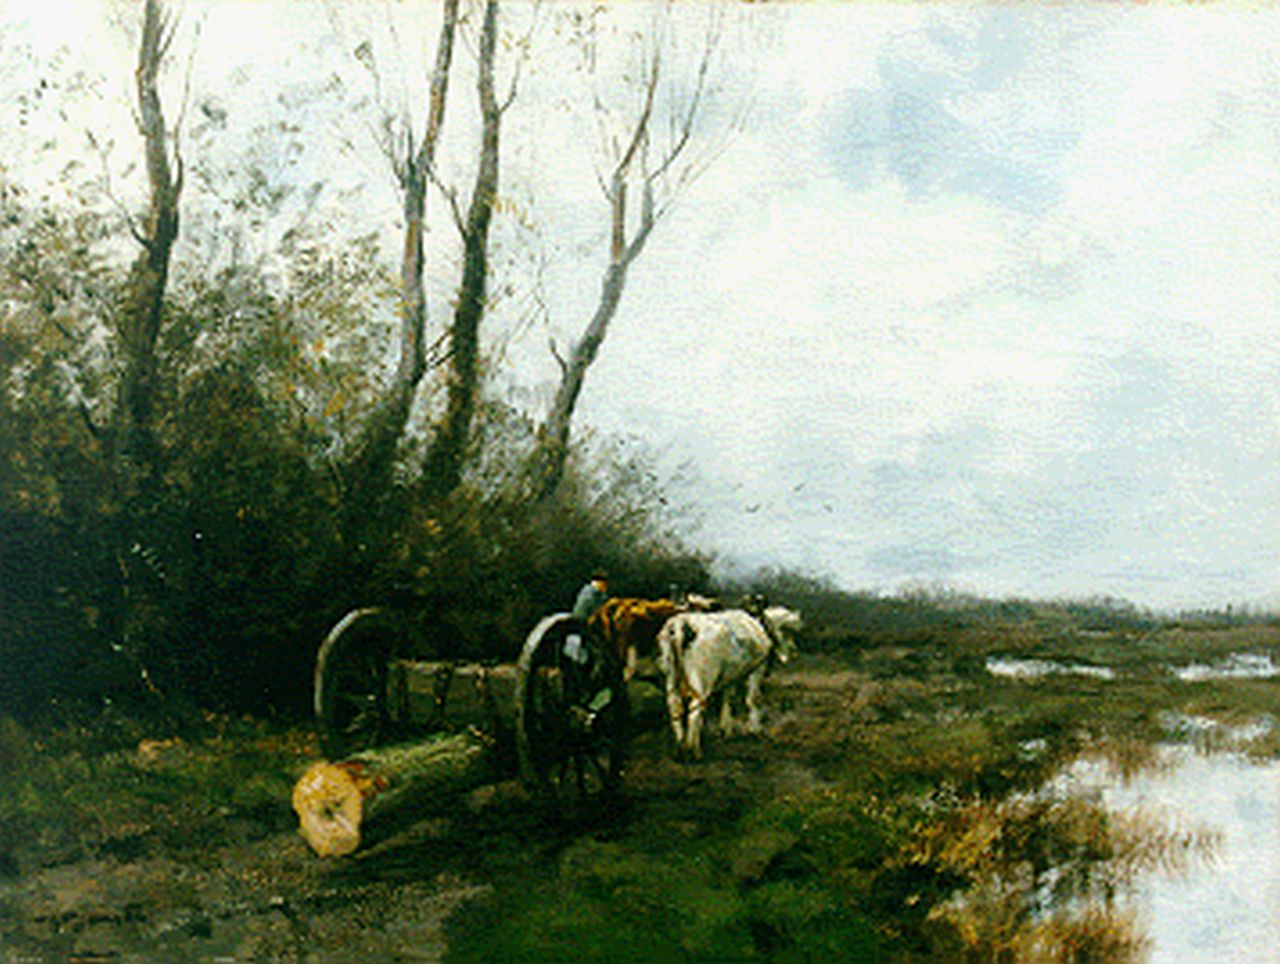 Jansen W.G.F.  | 'Willem' George Frederik Jansen, Mallejan op landweg, oil on canvas 60.5 x 80.4 cm, gesigneerd linksonder